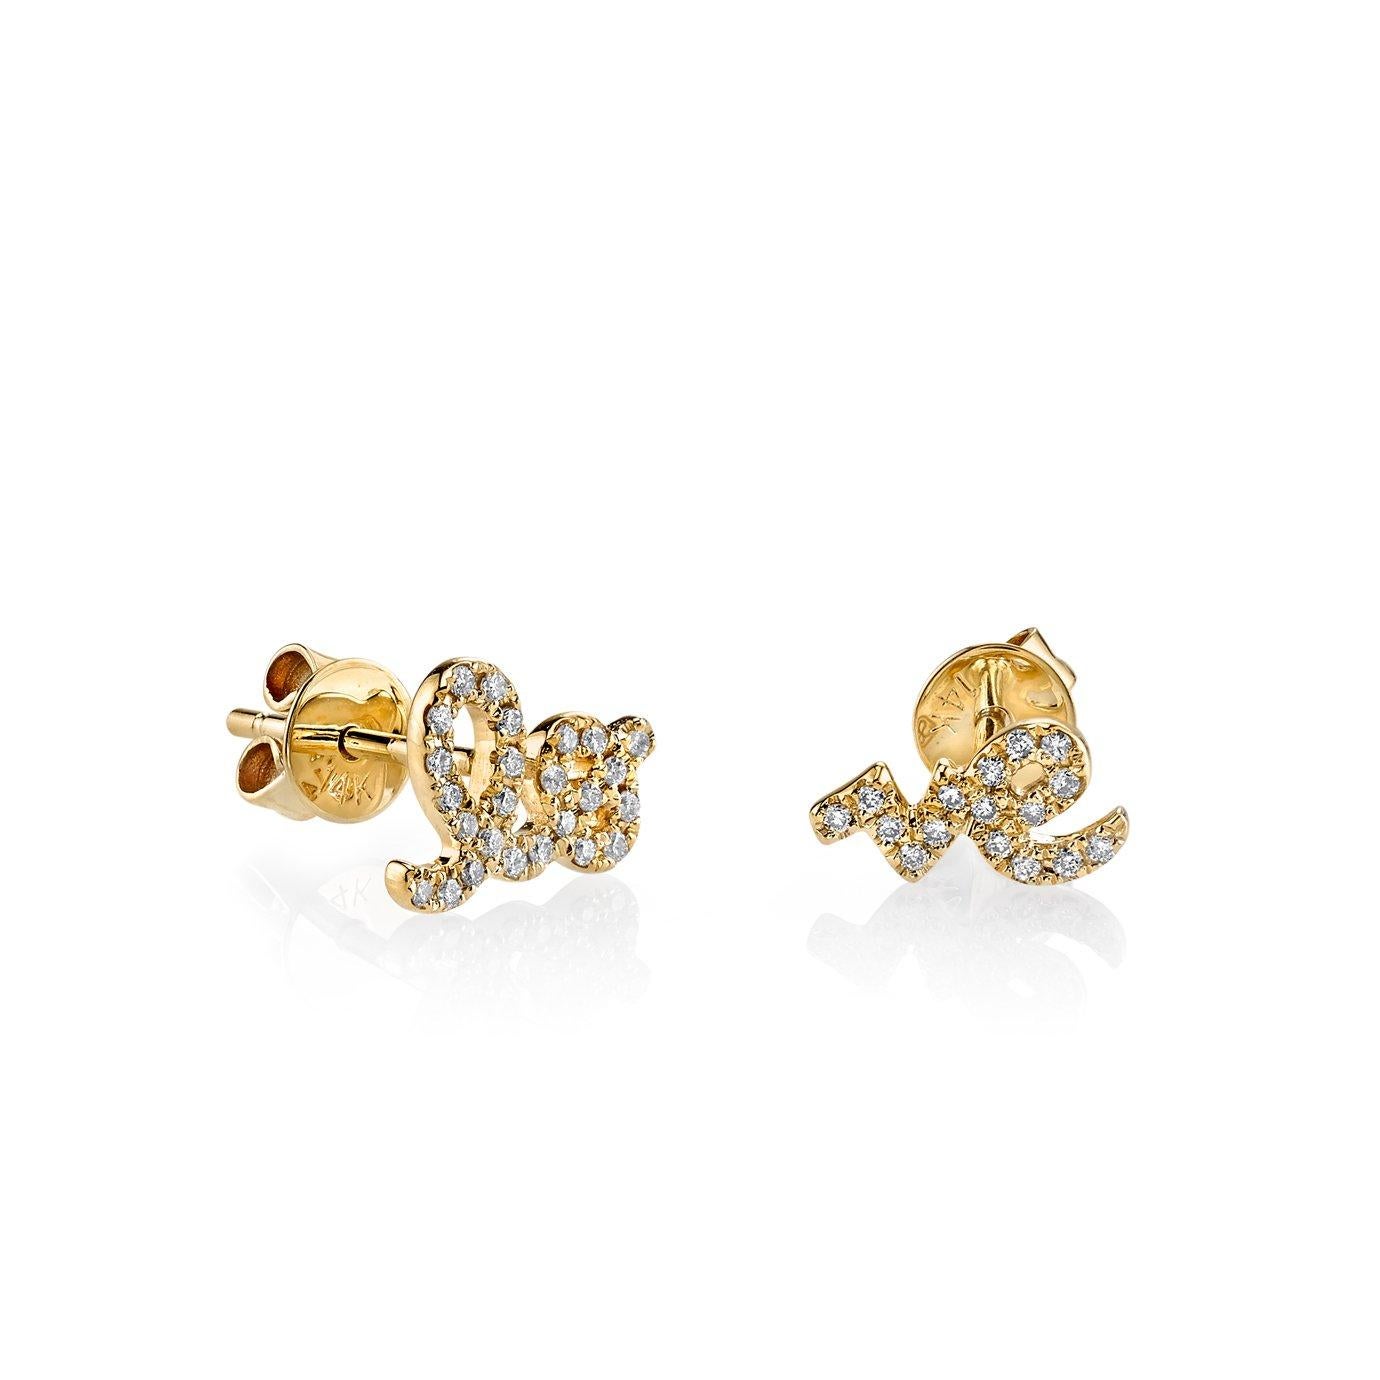 Ces boucles d'oreilles, façonnées dans de l'or 14 carats, sont un véritable artisanat de la passion. Elles représentent avec art le mot 